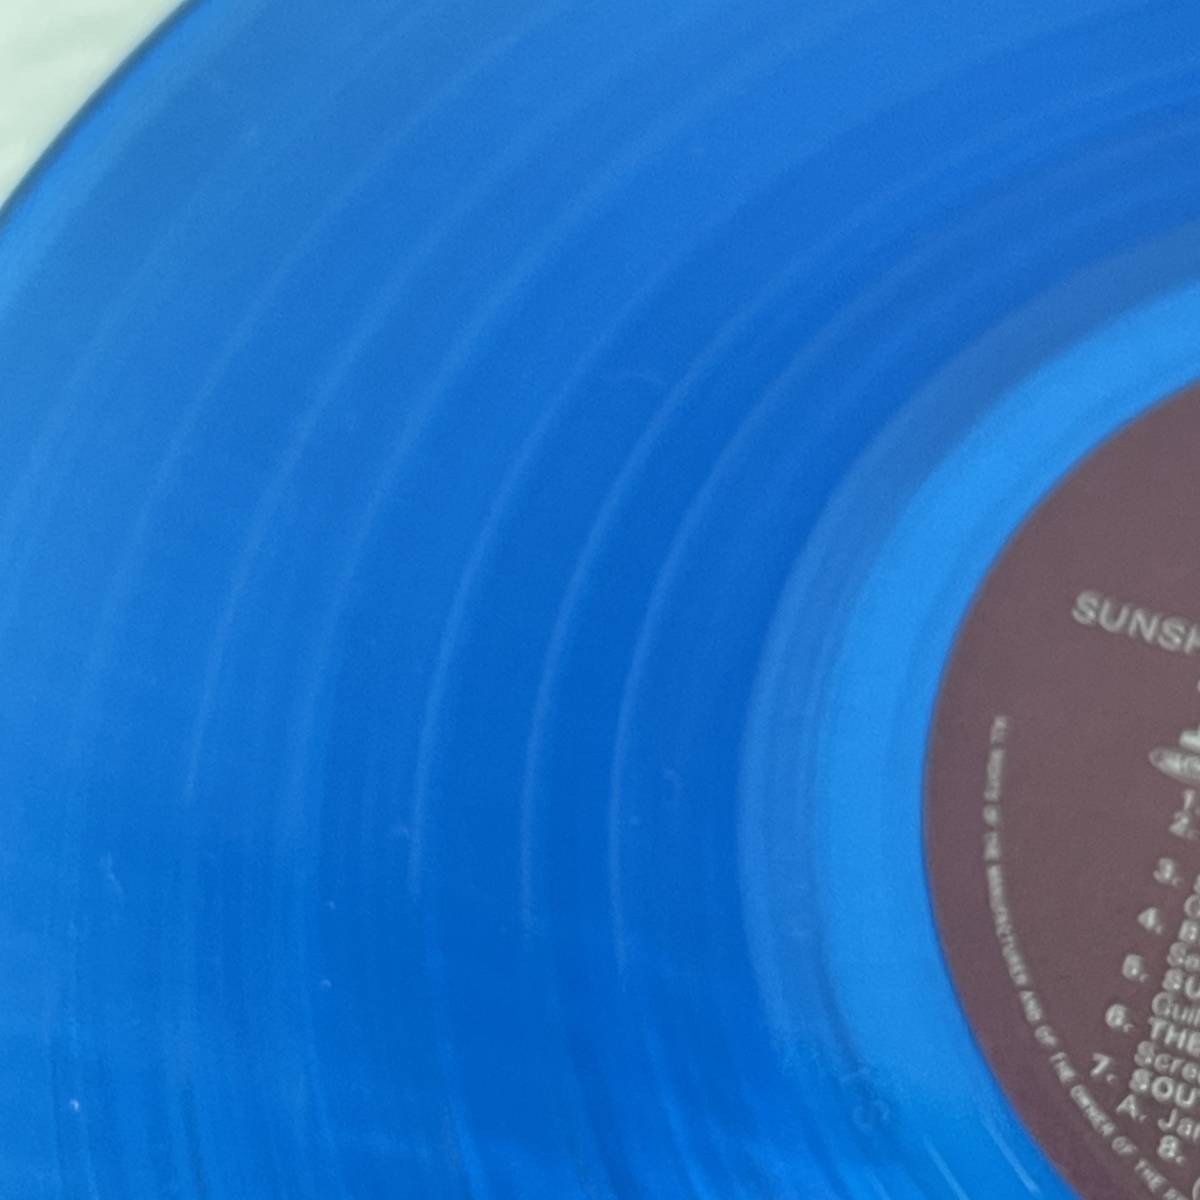 ザ・ビーチ・ボーイズ / サンシャイン・デイズ ECS-81576 初回盤 / LPレコード マリンブルーカラー盤 青 THE BEACH BOYSの画像6